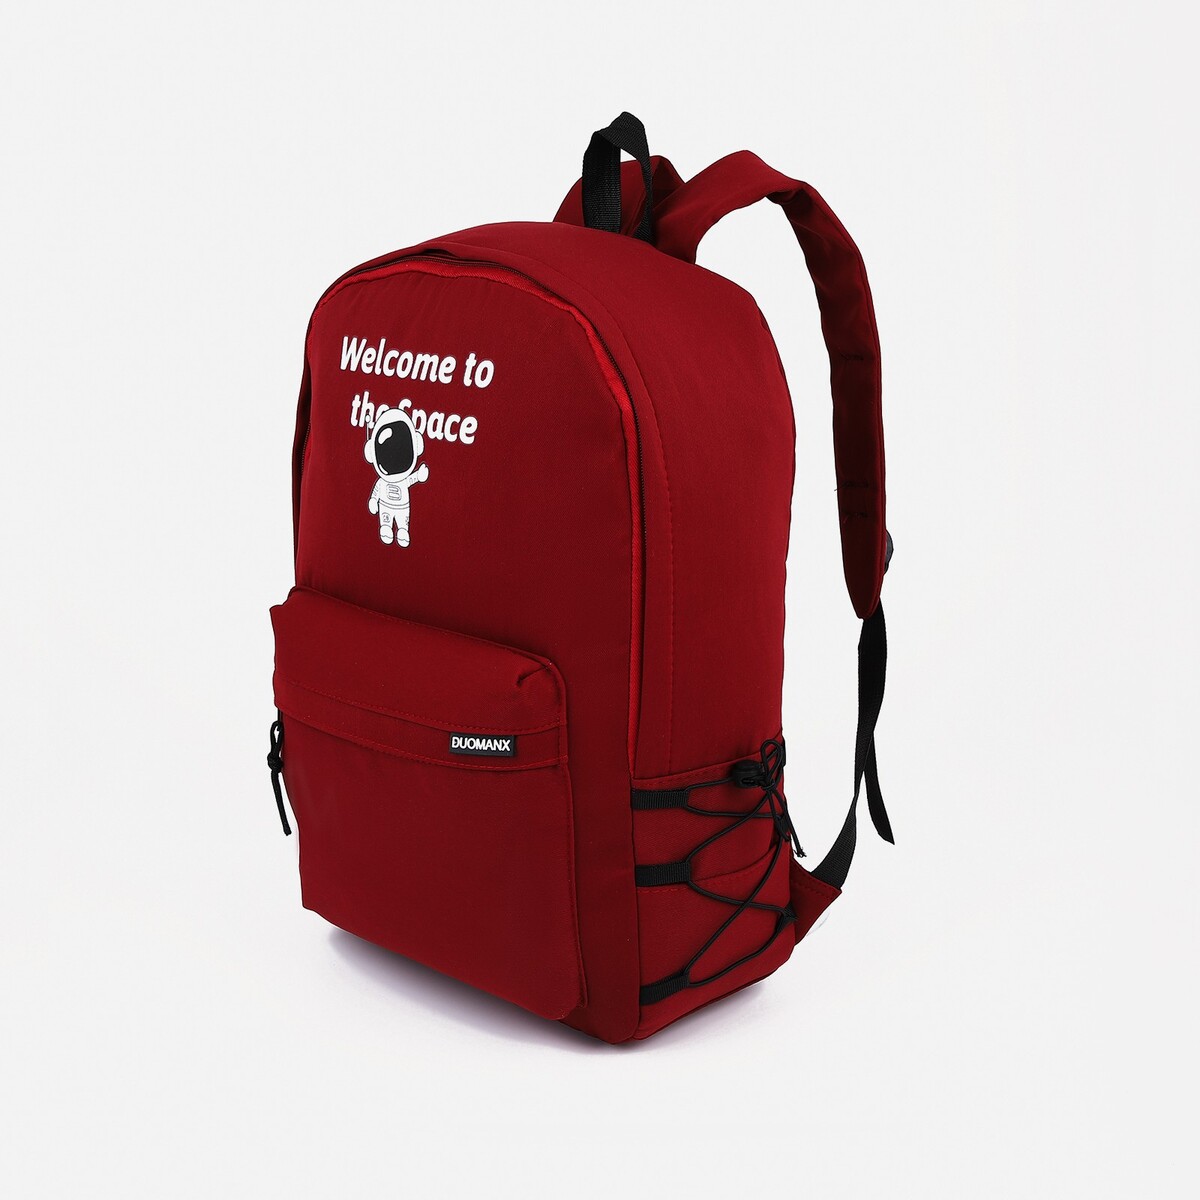 Рюкзак школьный из текстиля на молнии, 3 кармана, цвет бордовый pixel bag рюкзак с led дисплеем pixel plus red line бордовый